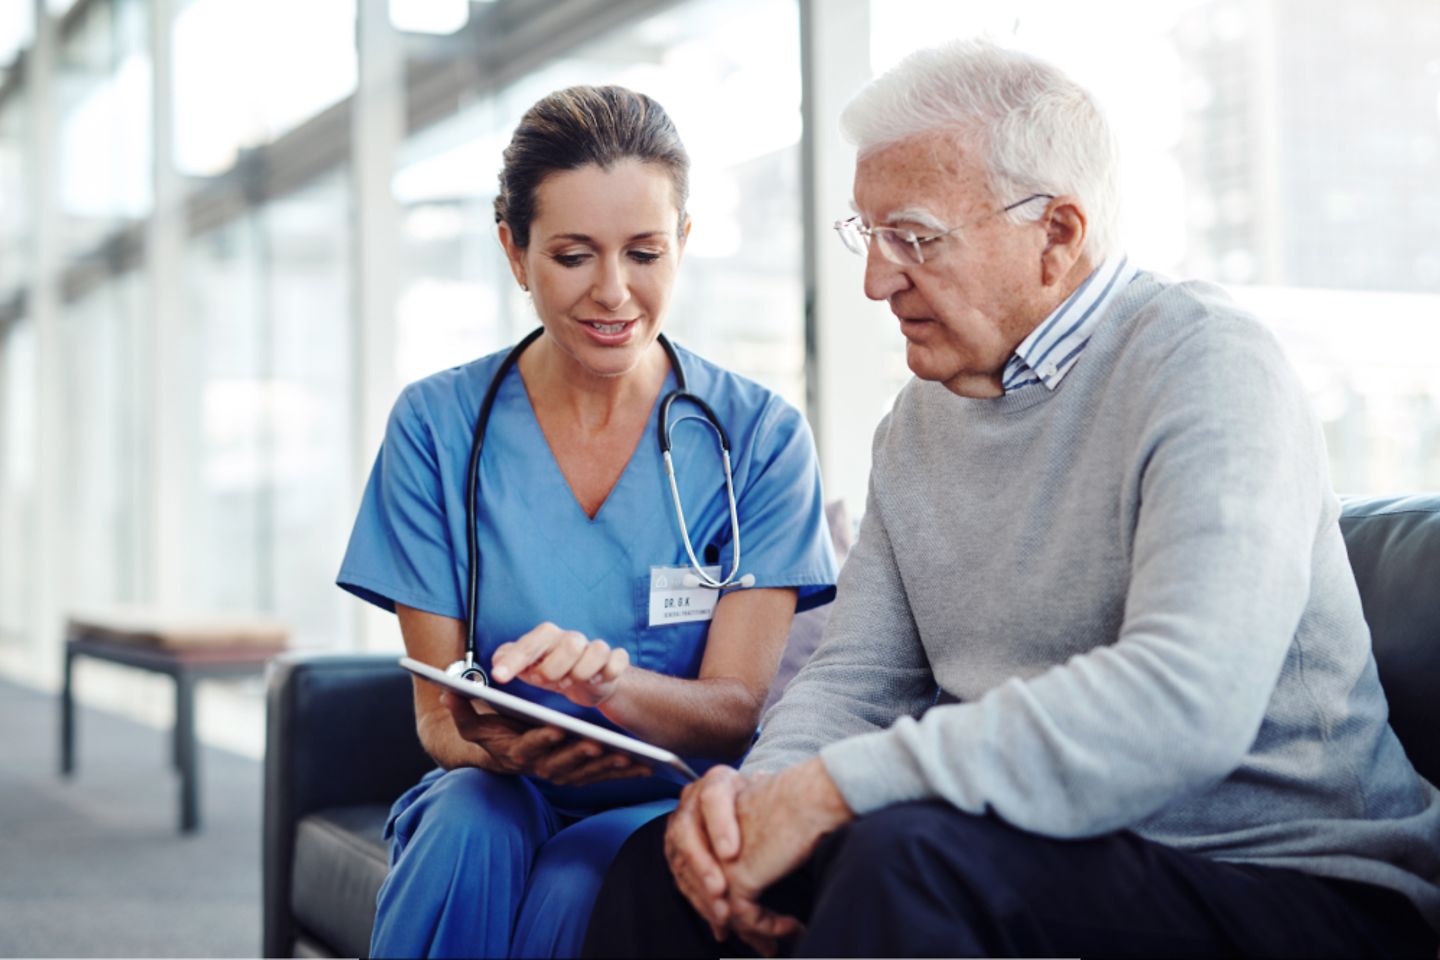 Klinikmitarbeiterin in blauem Kittel zeigt einem weißhaarigen Mann etwas auf einem Tablet